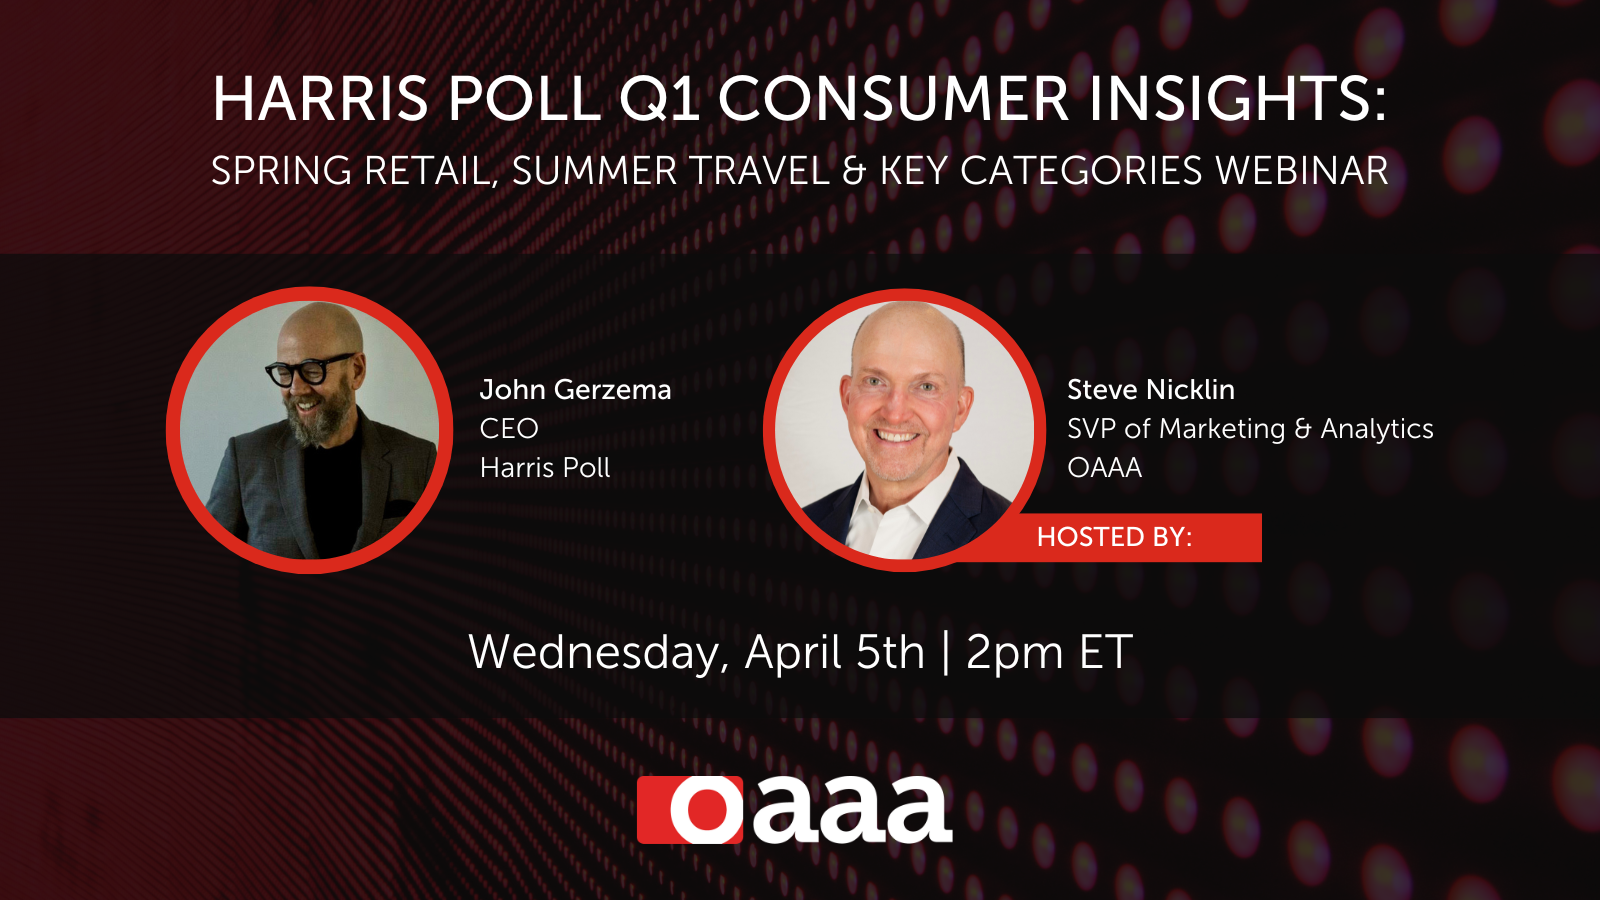 <strong></noscript>Harris Poll Q1 Consumer Insights: Spring Retail, Summer Travel & Key Categories Webinar</strong>” />
	</a>
	<div class=